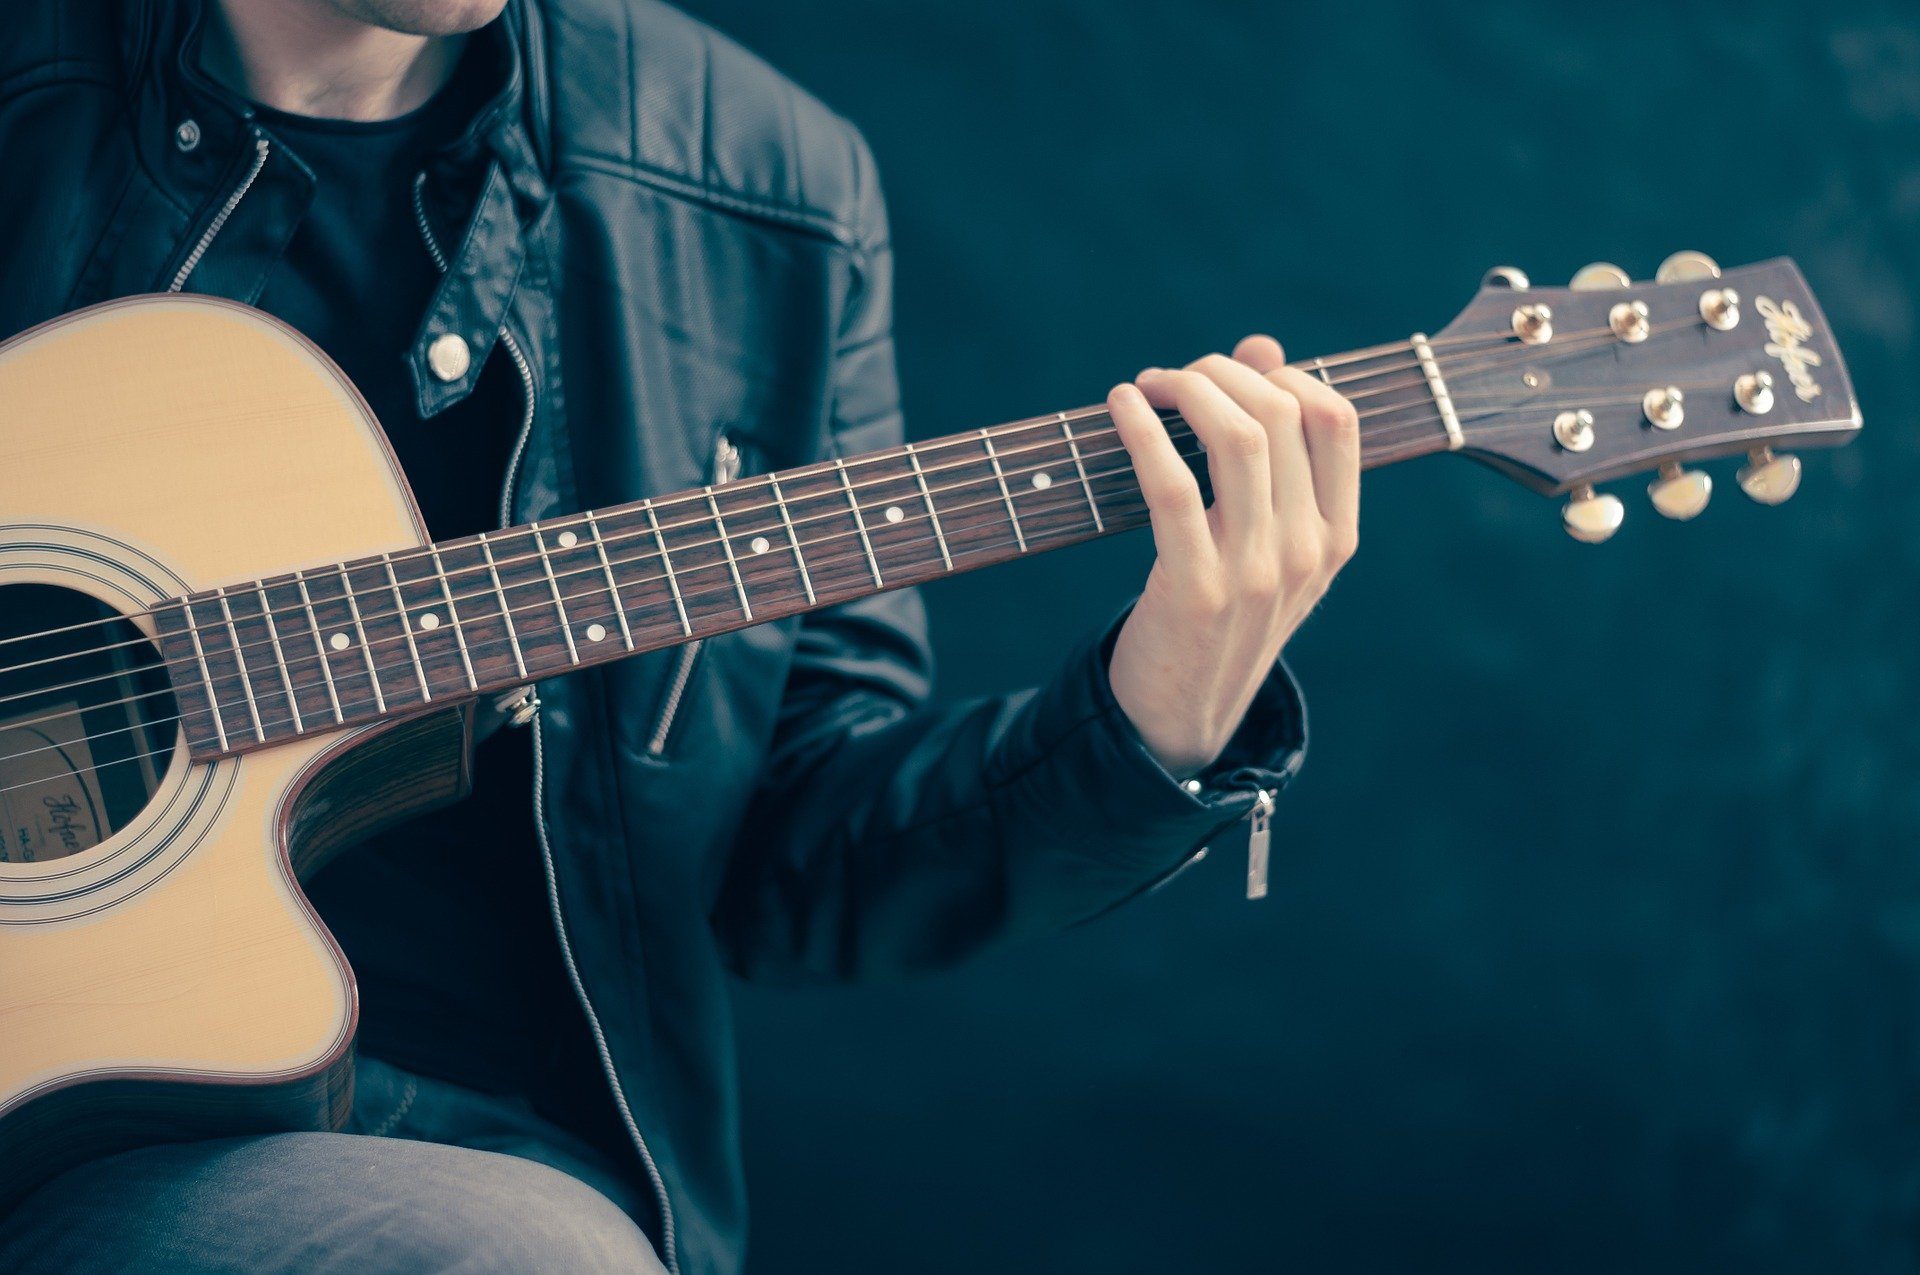 muzyka quiz muzyczny test wiedzy sprawdzian instrumenty piosenki nuty wykonawcy artyści teksty wiedza ogólna gitara